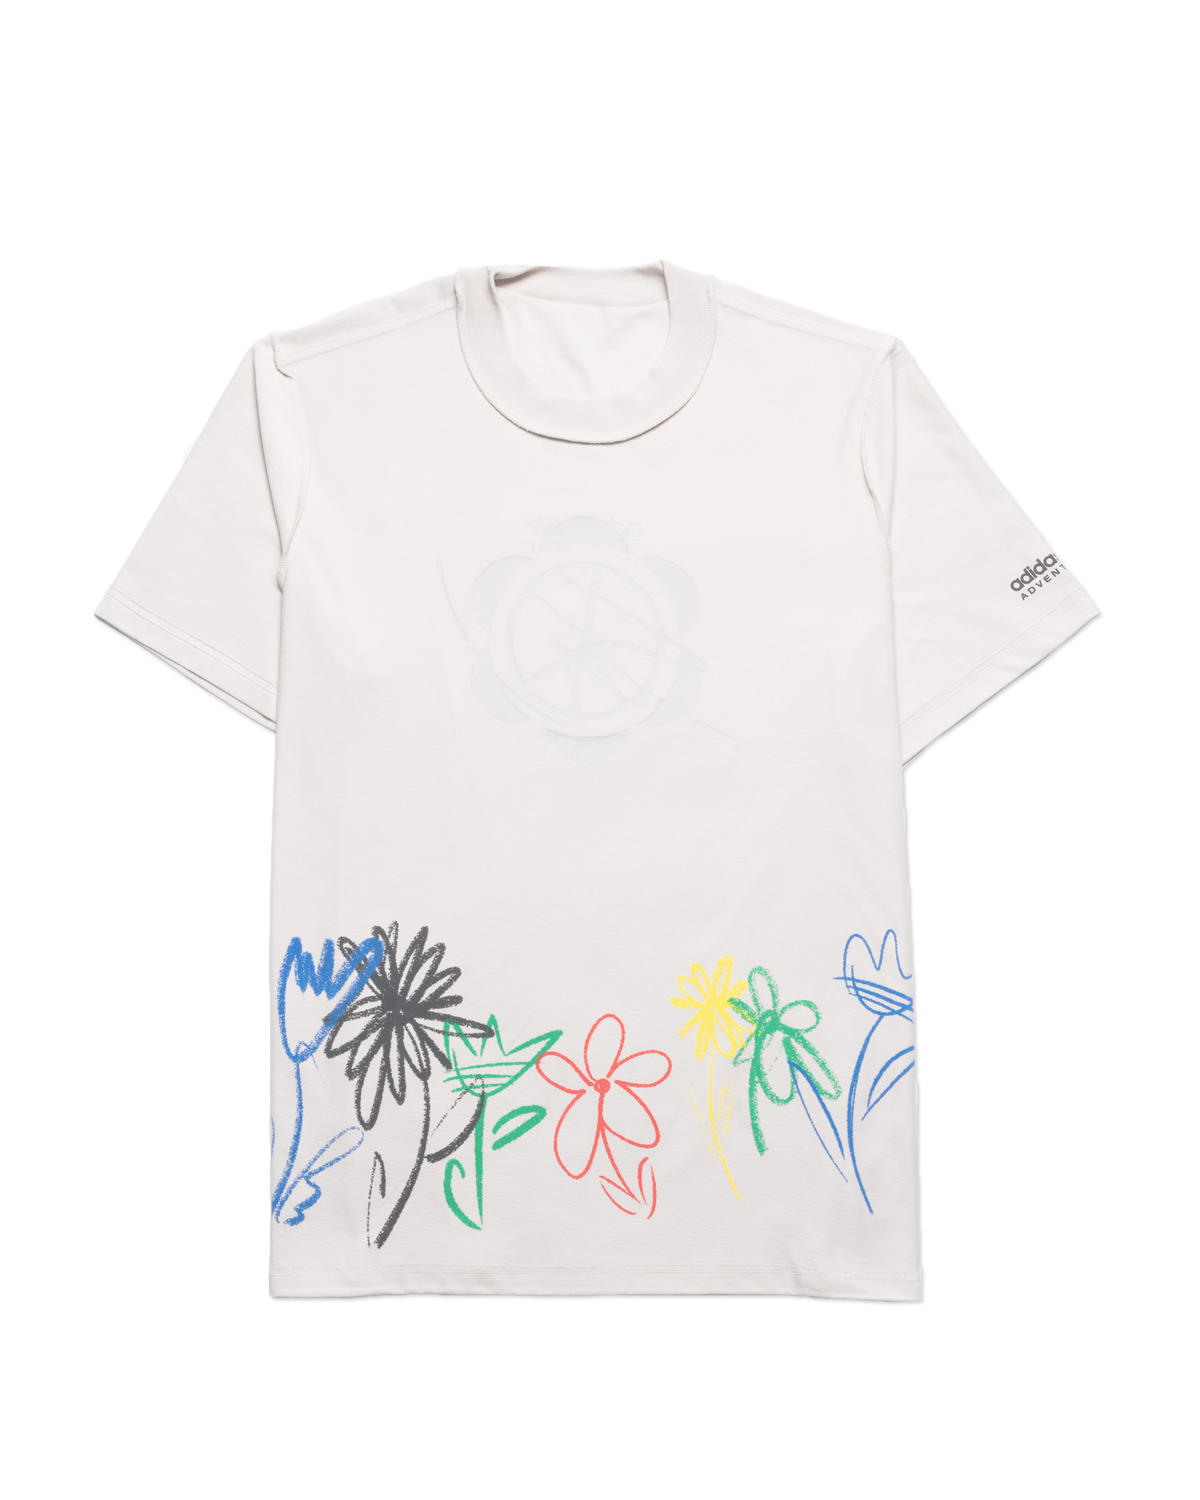 adidas Originals x Sean Wotherspoon Reversible T-Shirt | HI3298 | AFEW ...